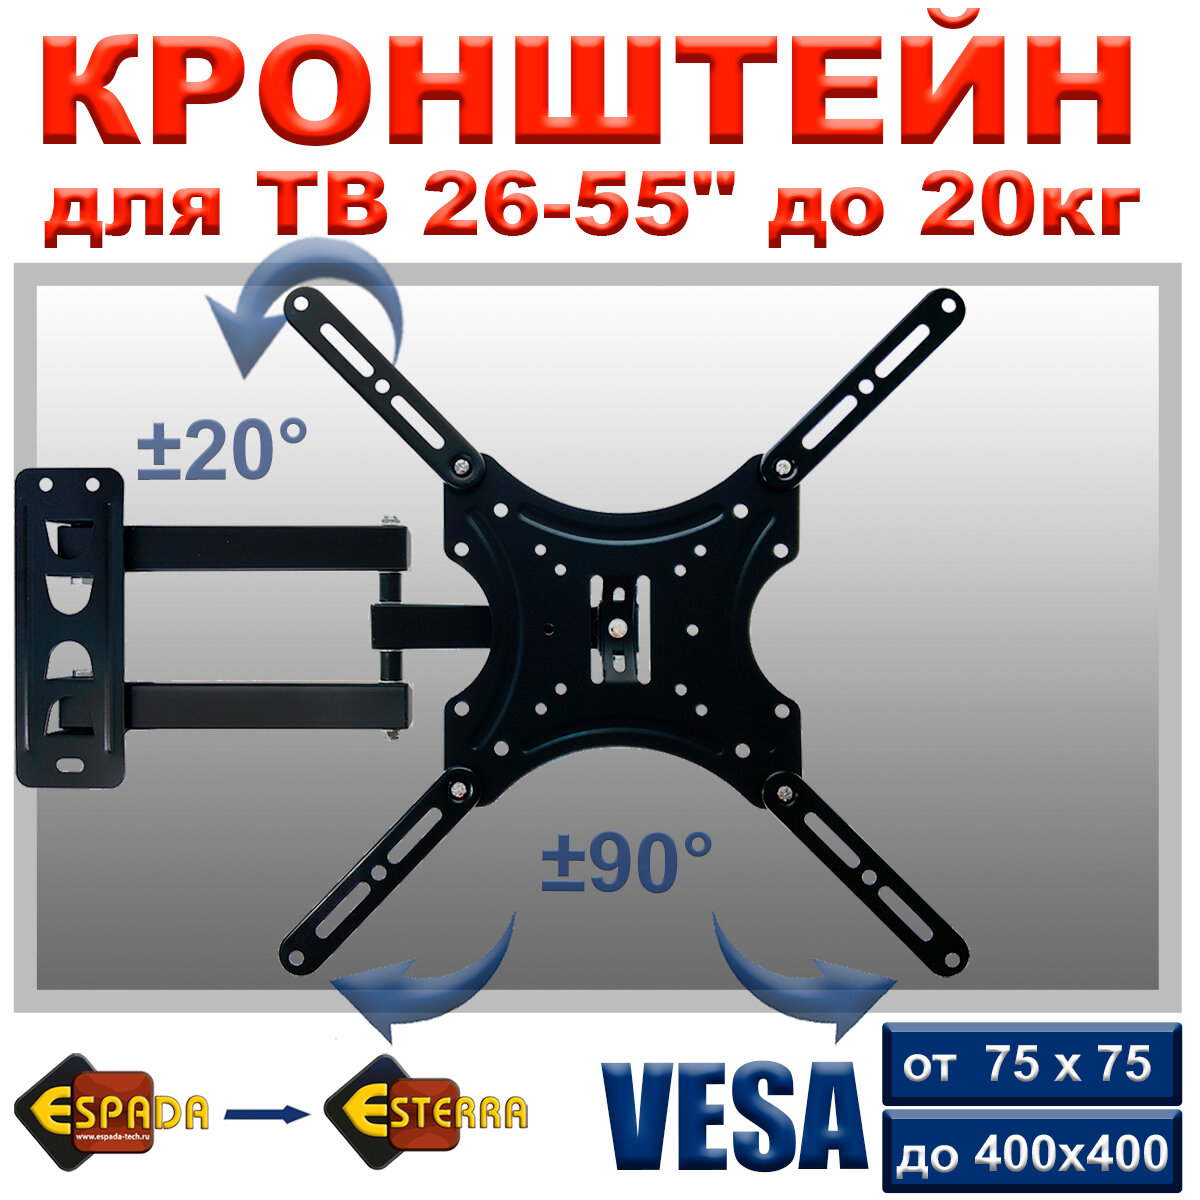 Настенный кронштейн Espada, модель Ekr2655wa, для телевизоров с диагональю от 26" до 55"